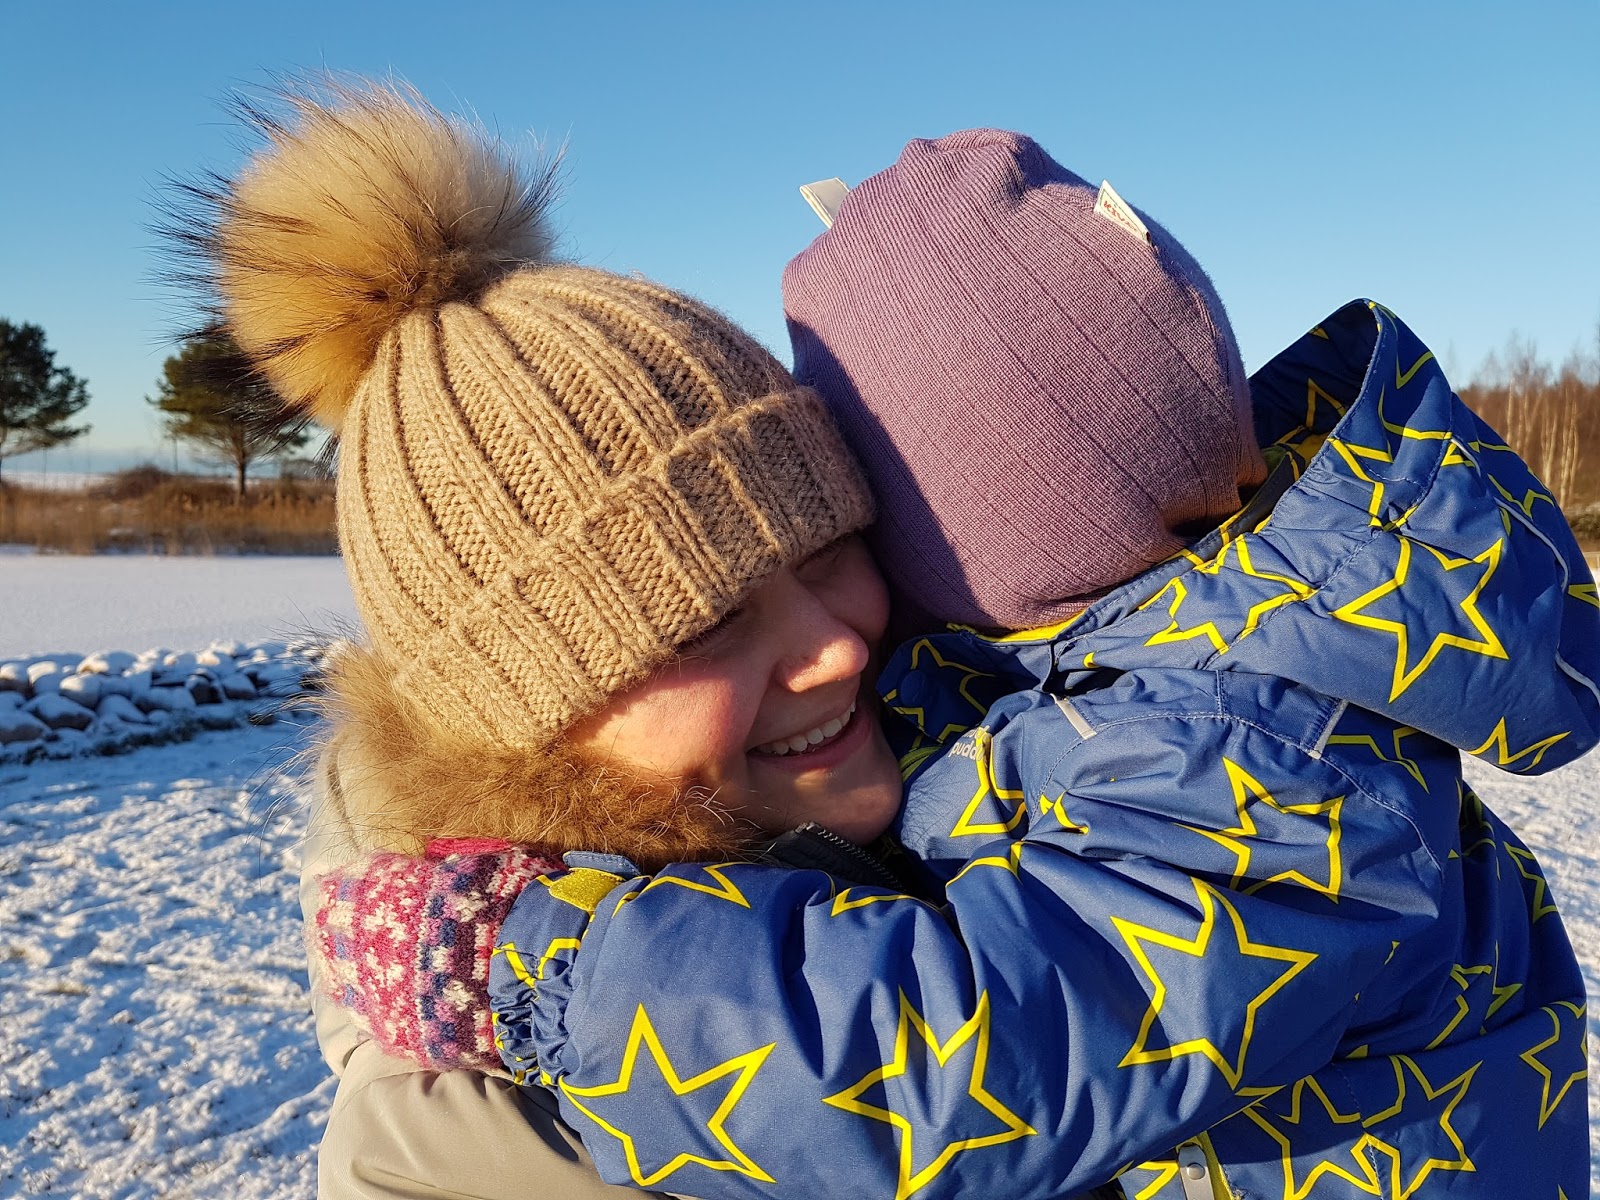 mum cuddling daughter in freezing outdoors